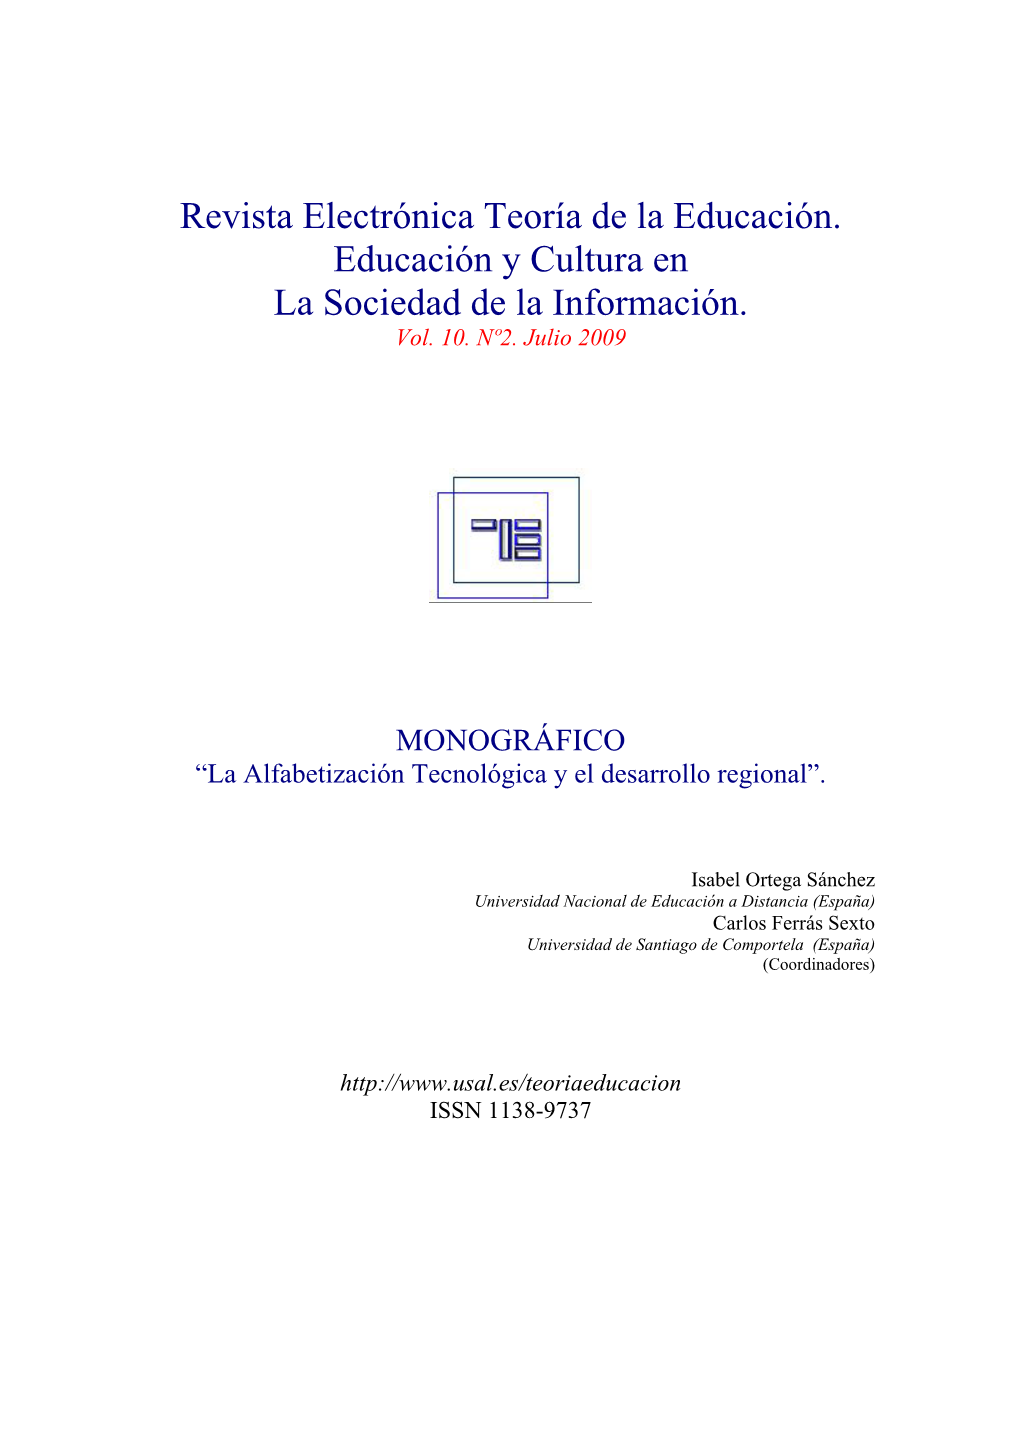 Revista Electrónica Teoría De La Educación. Educación Y Cultura En La Sociedad De La Información